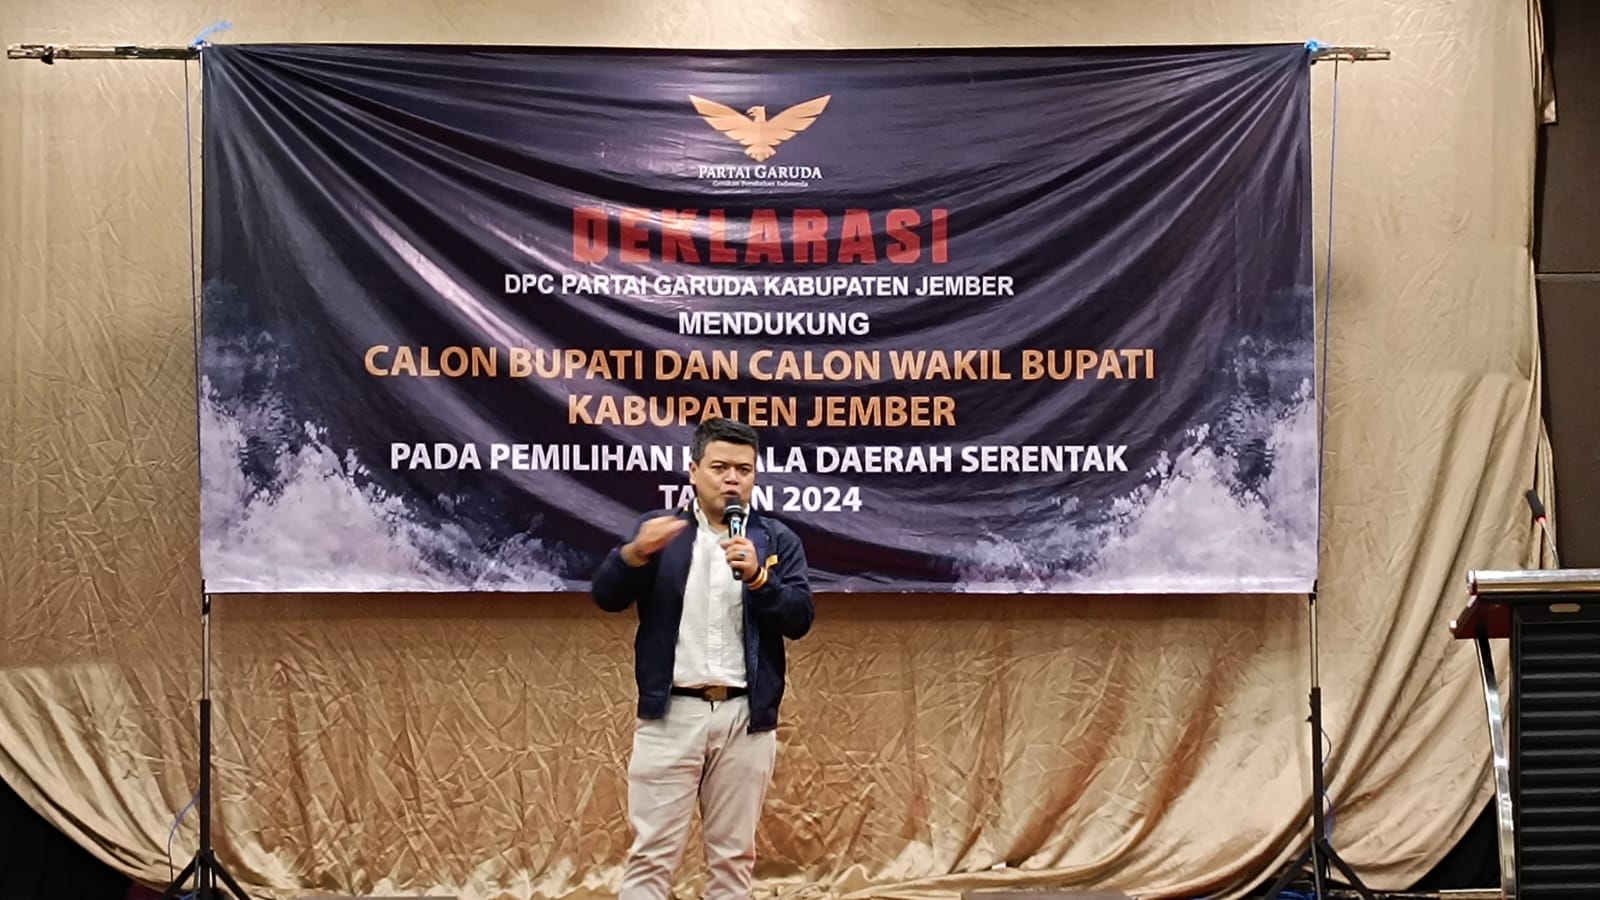 DPC Partai Garuda Jember deklarasi dukungan kepada Muhammad Fawait dan Anang Hermansyah sebagai Cabup - Cawabup Jember. (Foto: Ambang)